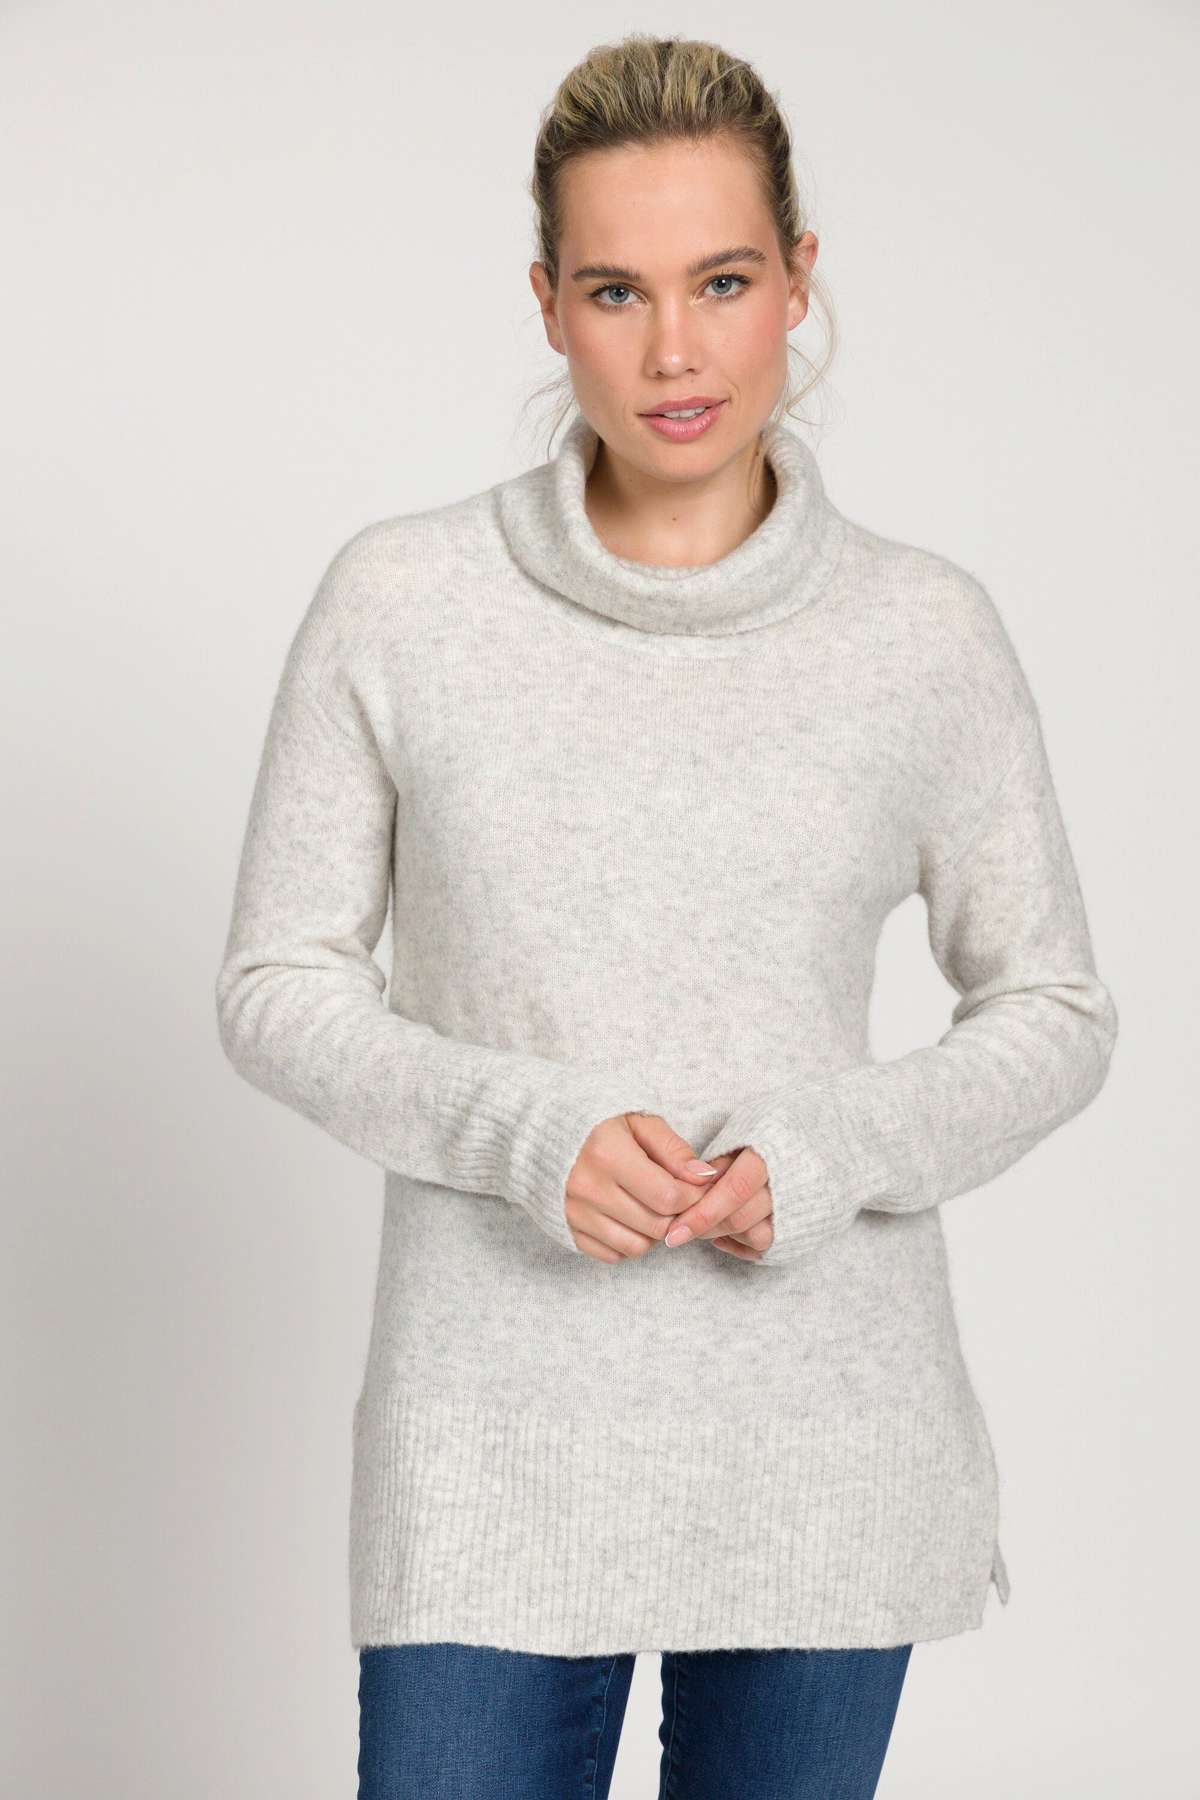 Длинный пуловер, свитер, объемная водолазка с длинными рукавами